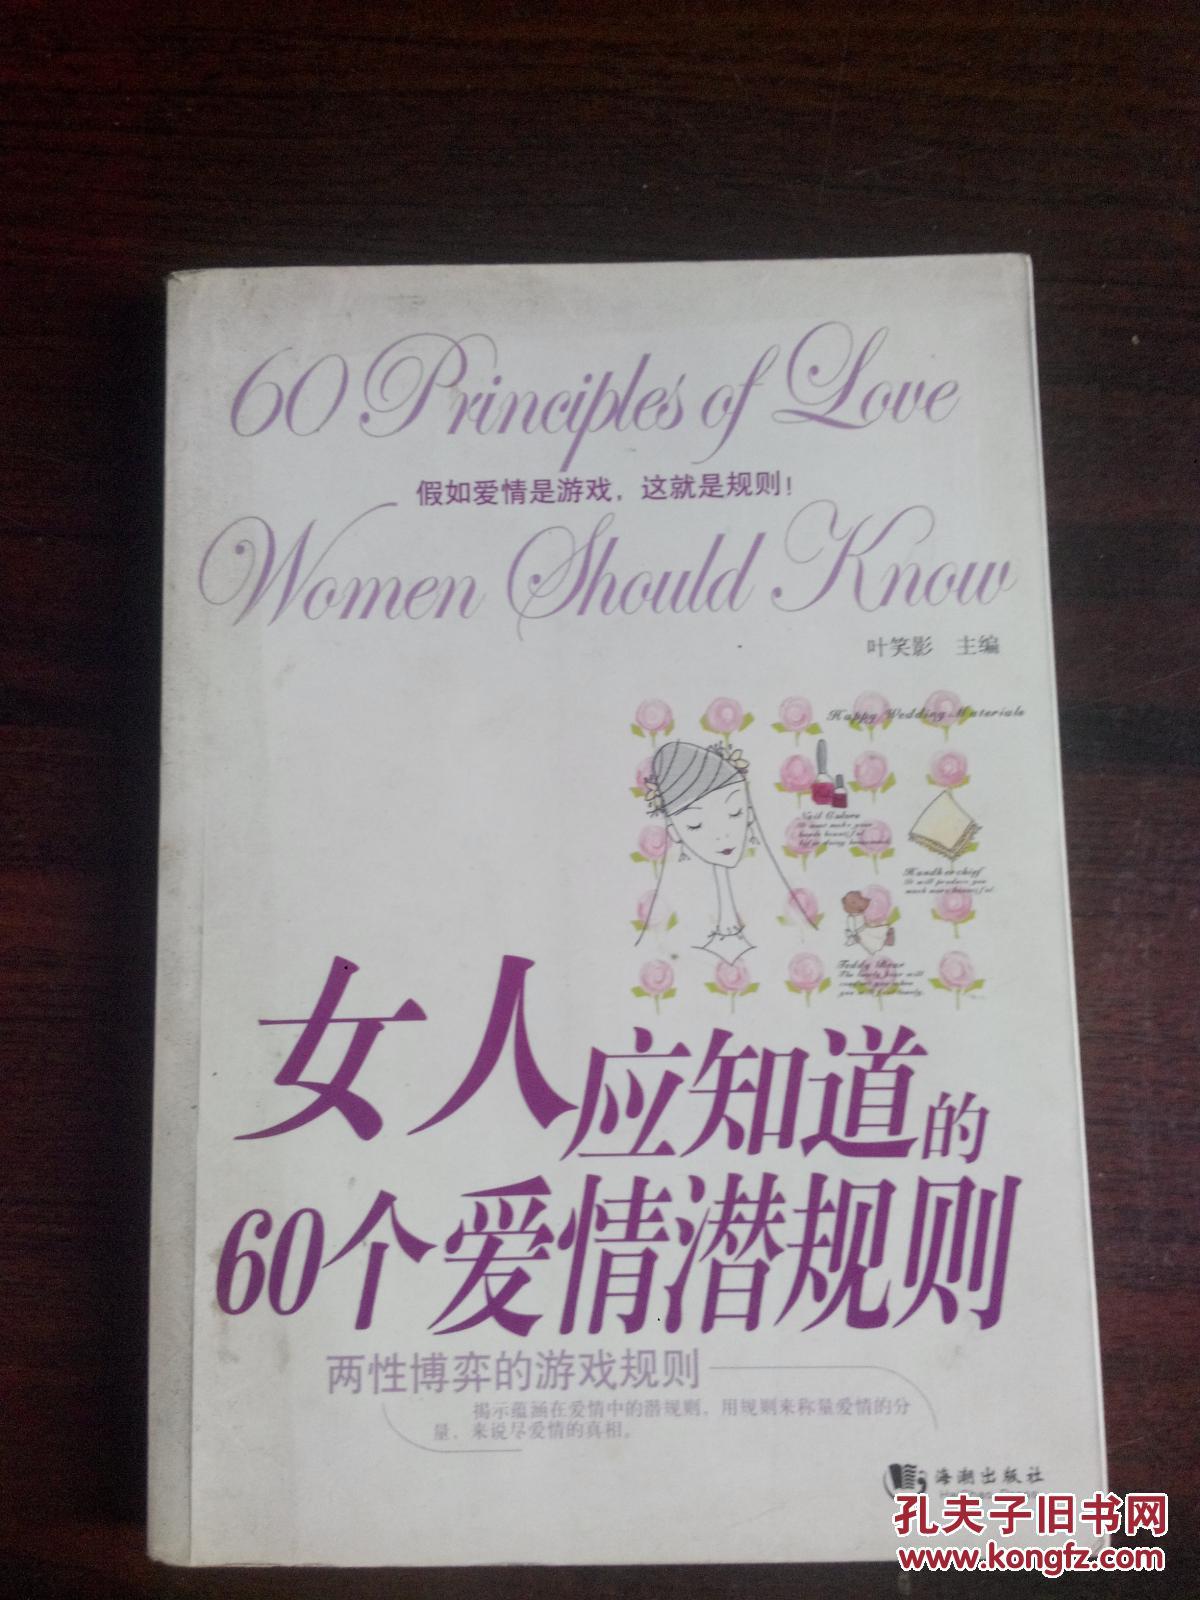 女人应知道的60个爱情潜规则